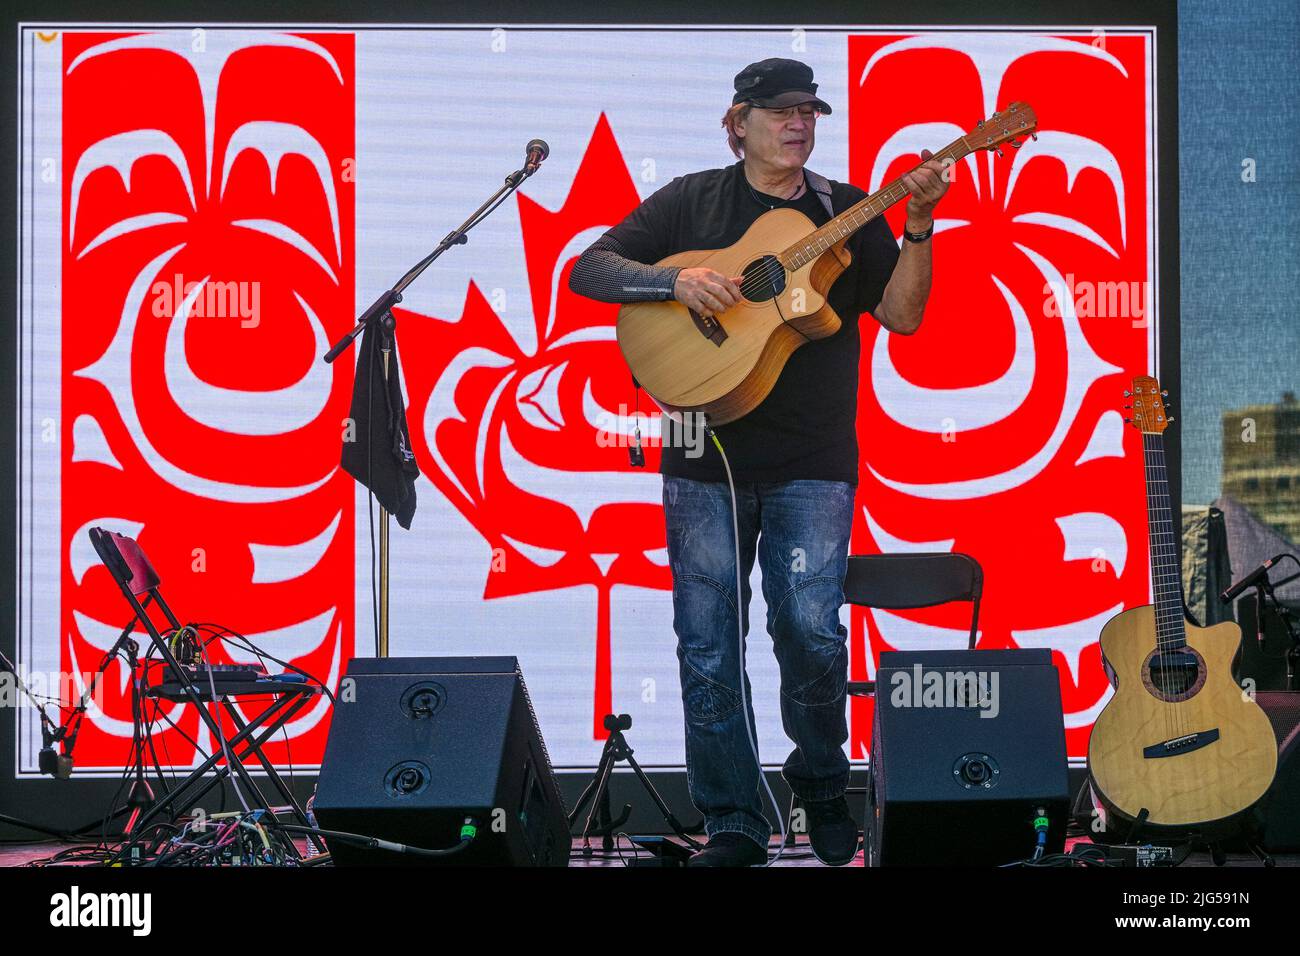 Don Alder, acoustic guitarist, Canada Day, Victoria, British Columbia, Canada Stock Photo